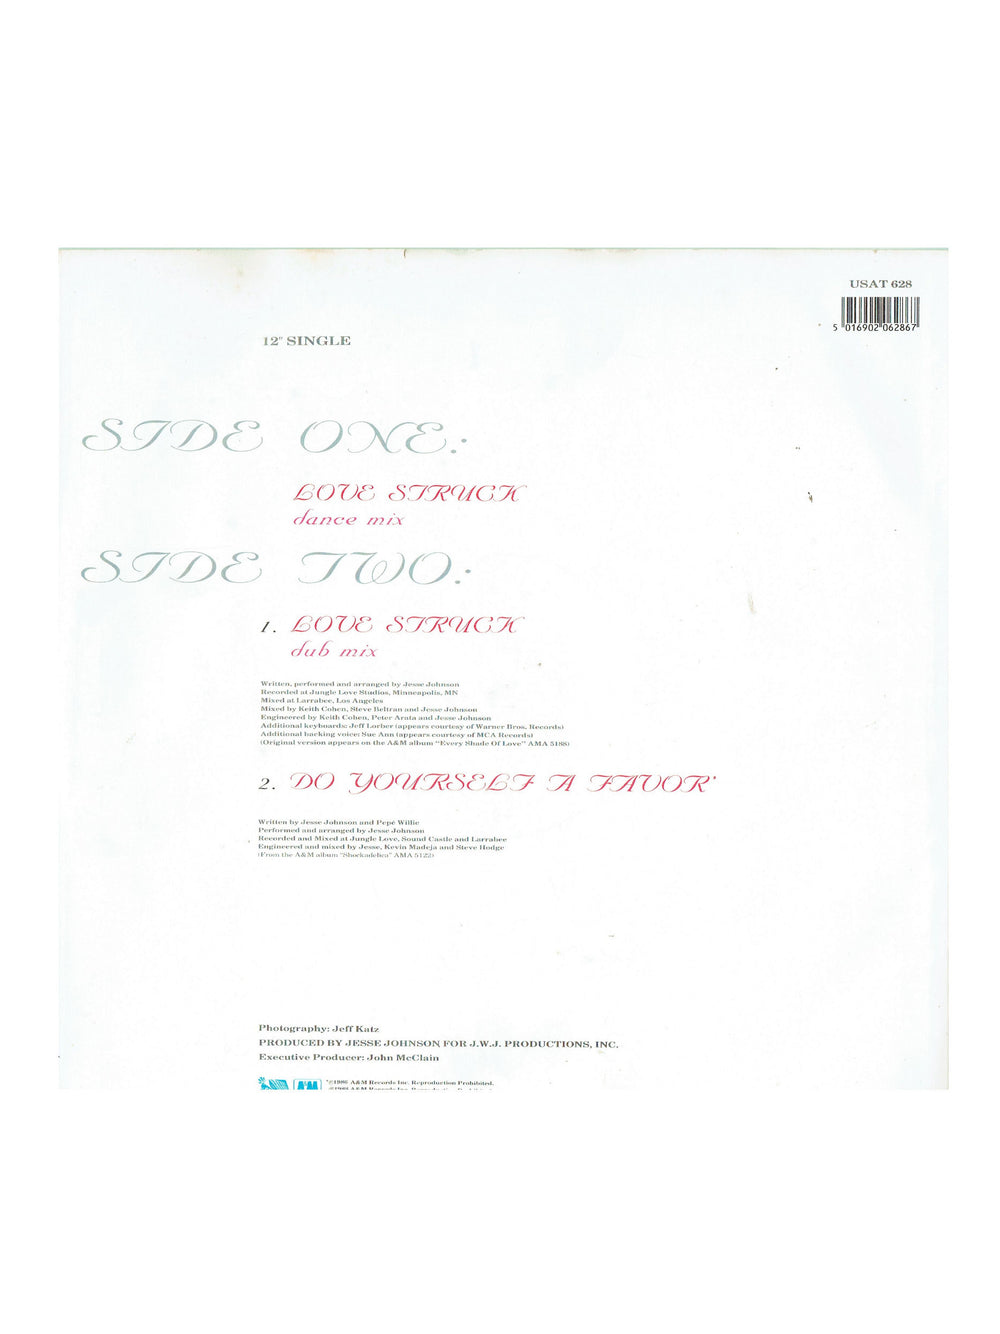 Prince – Jesse Johnson Love Struck 12 Vinyl Single UK Release 1988 USAT 628 Prince